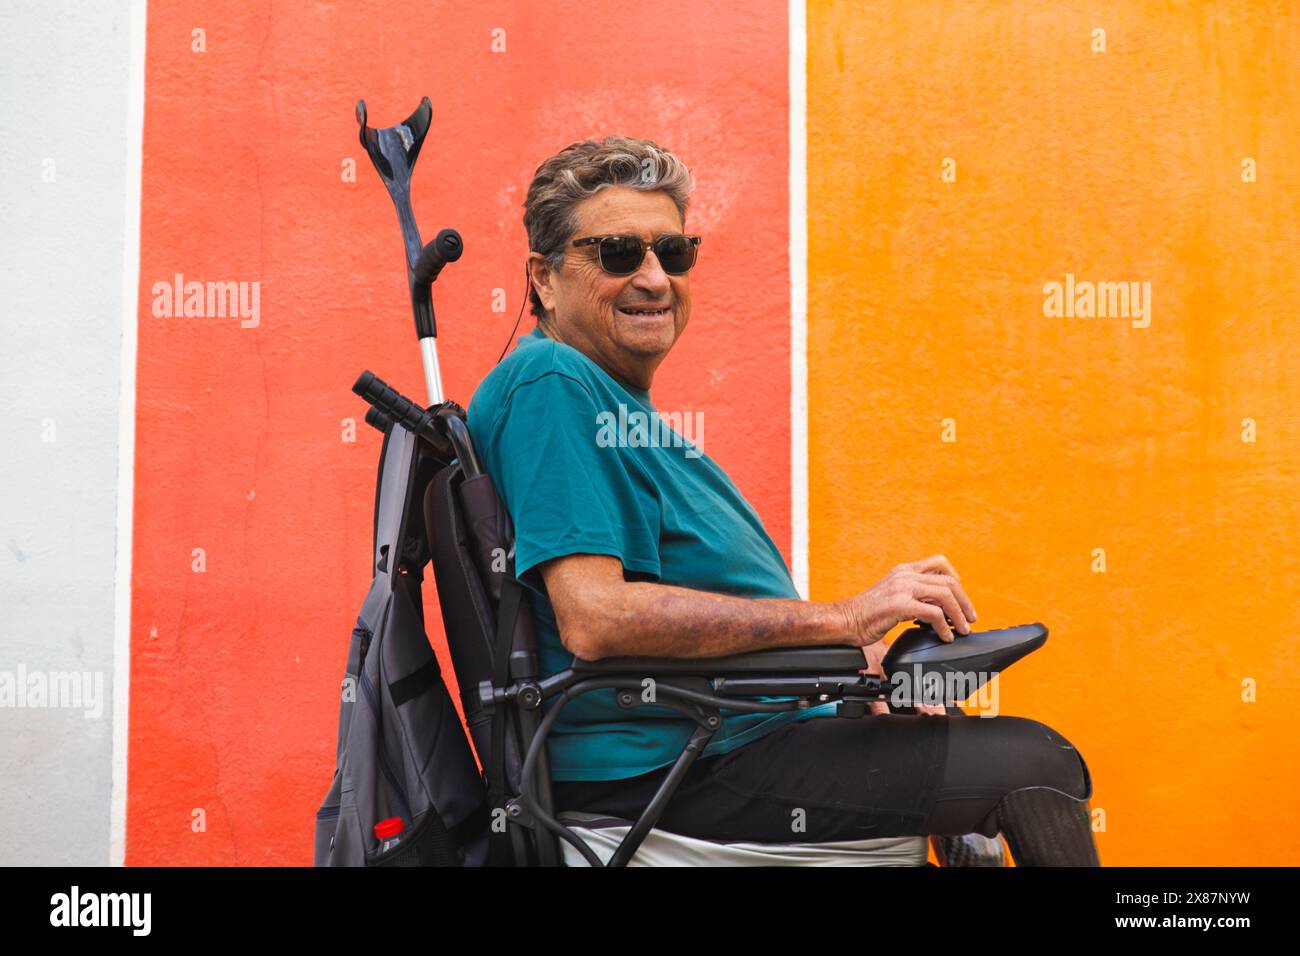 Homme senior retraité handicapé en fauteuil roulant motorisé par mur coloré Banque D'Images